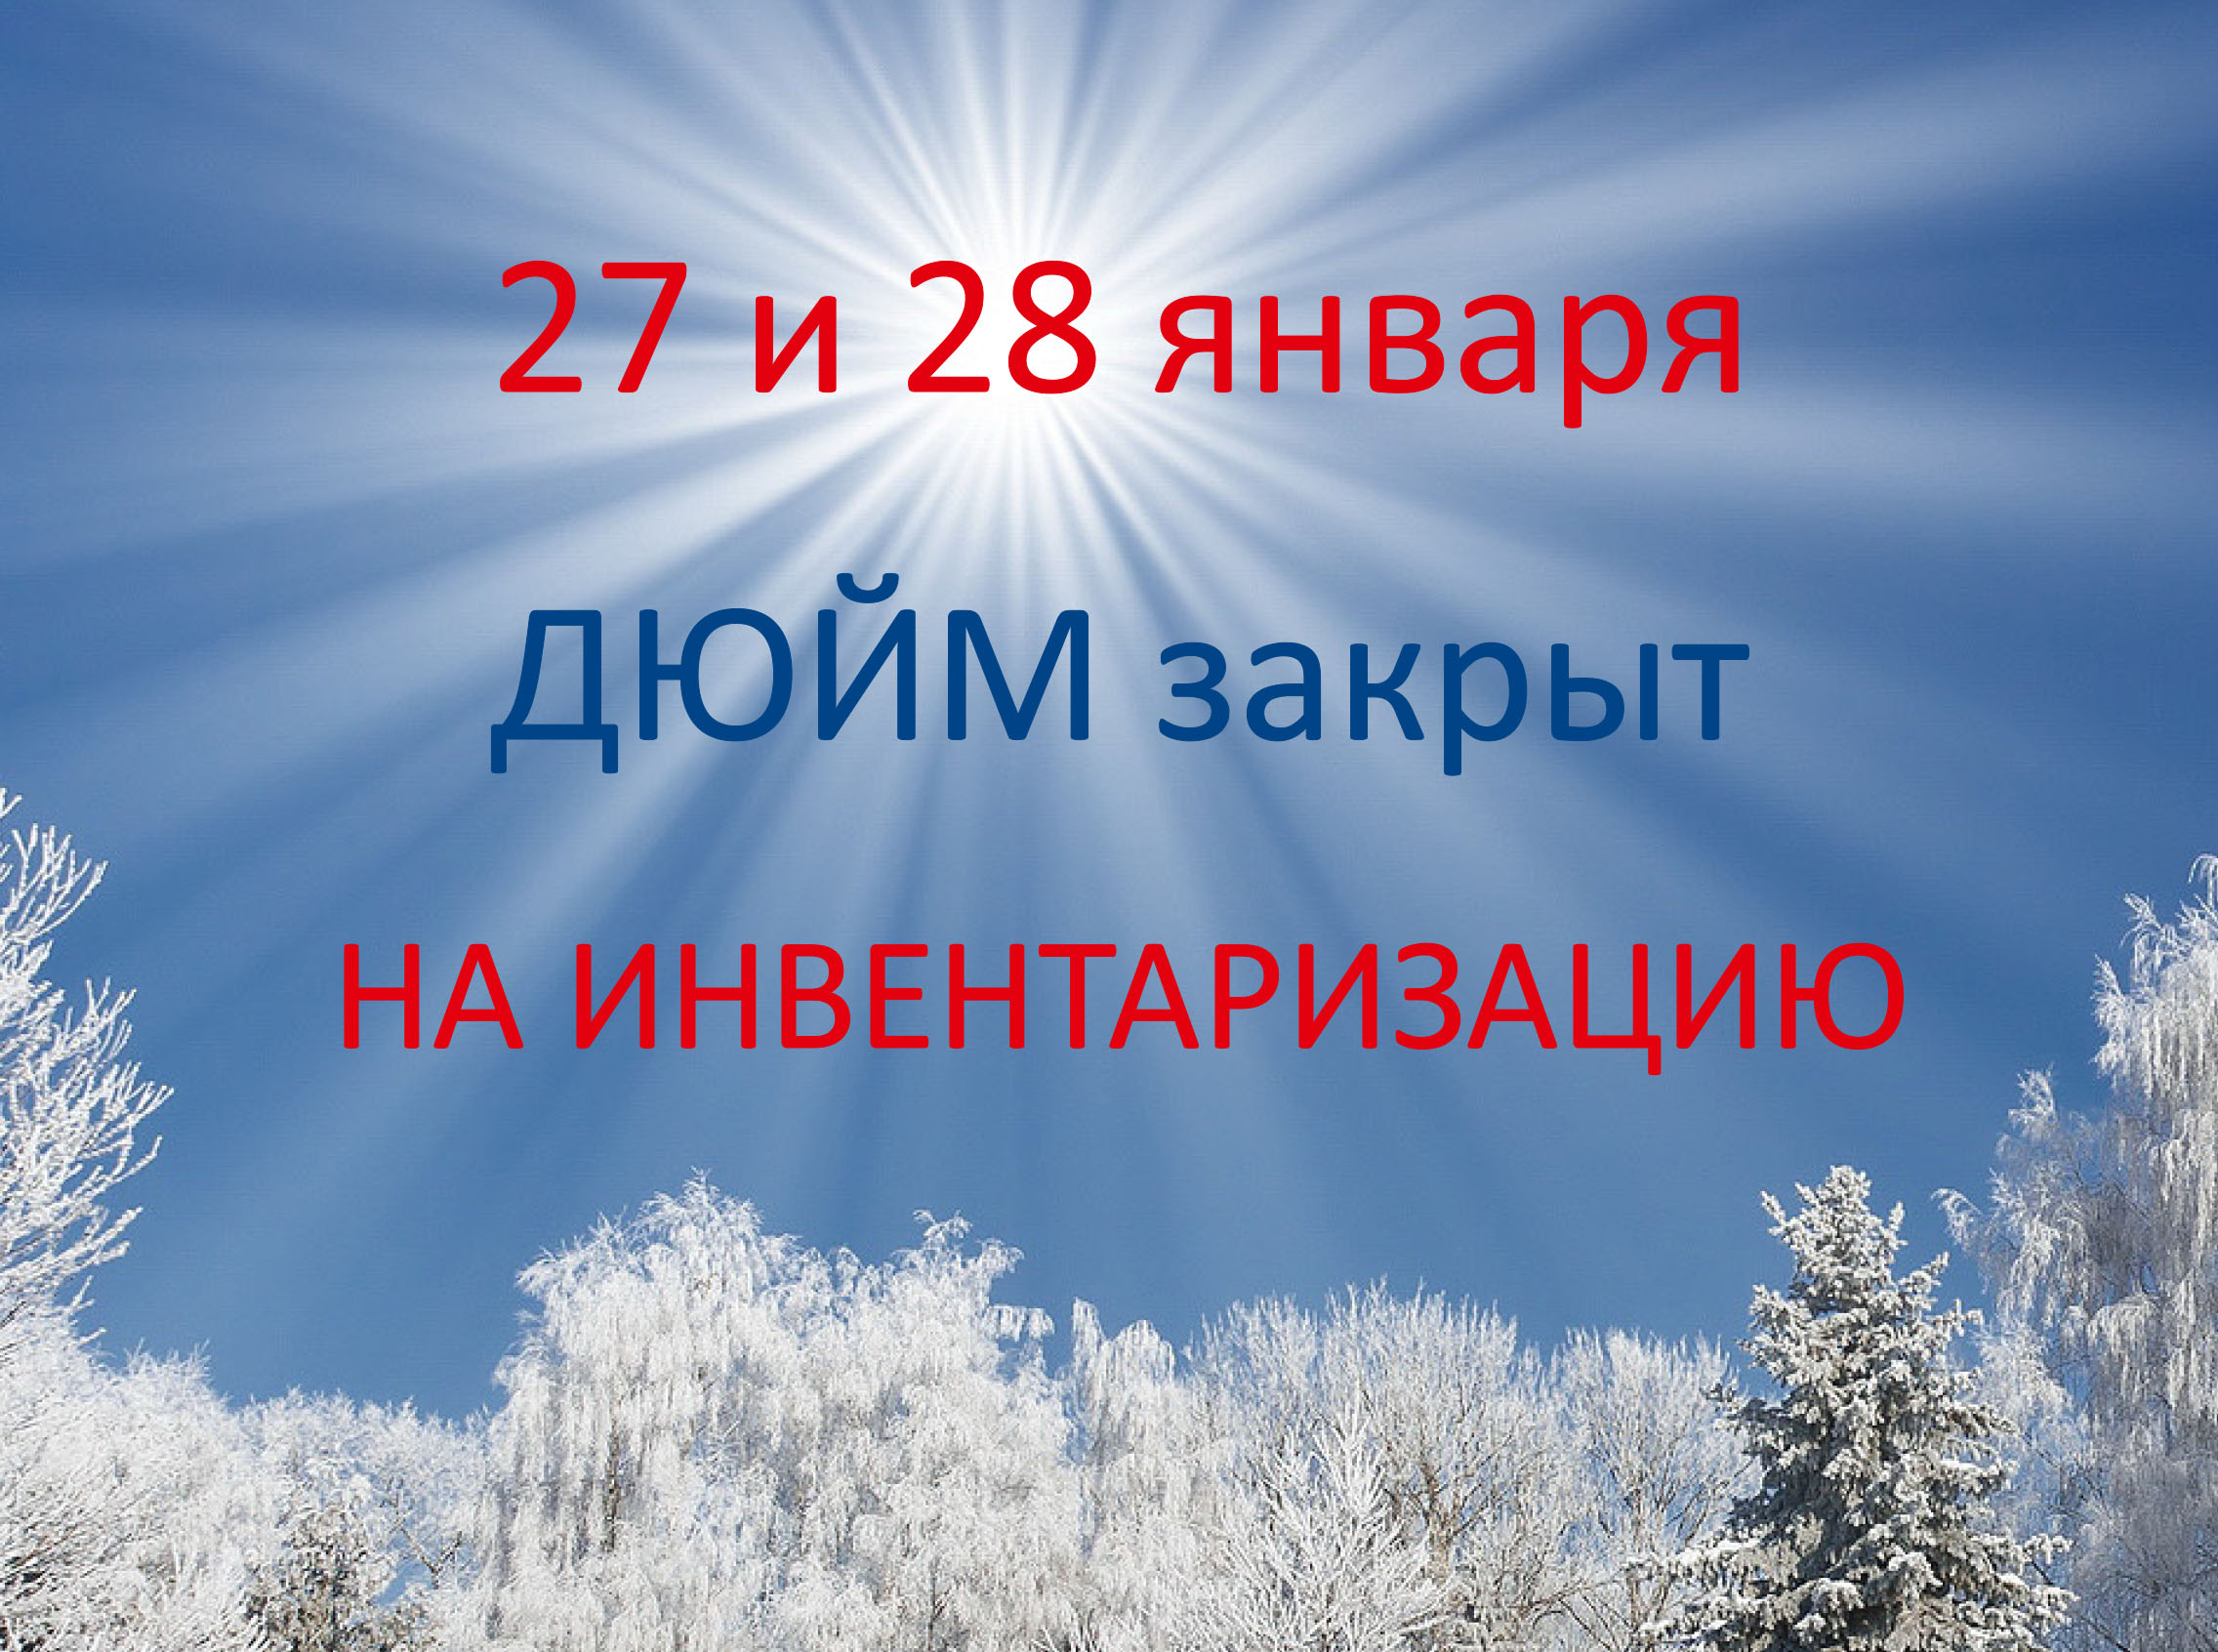 ВНИМАНИЕ! 27 и 28 января ДЮЙМ закрыт на инвентаризацию